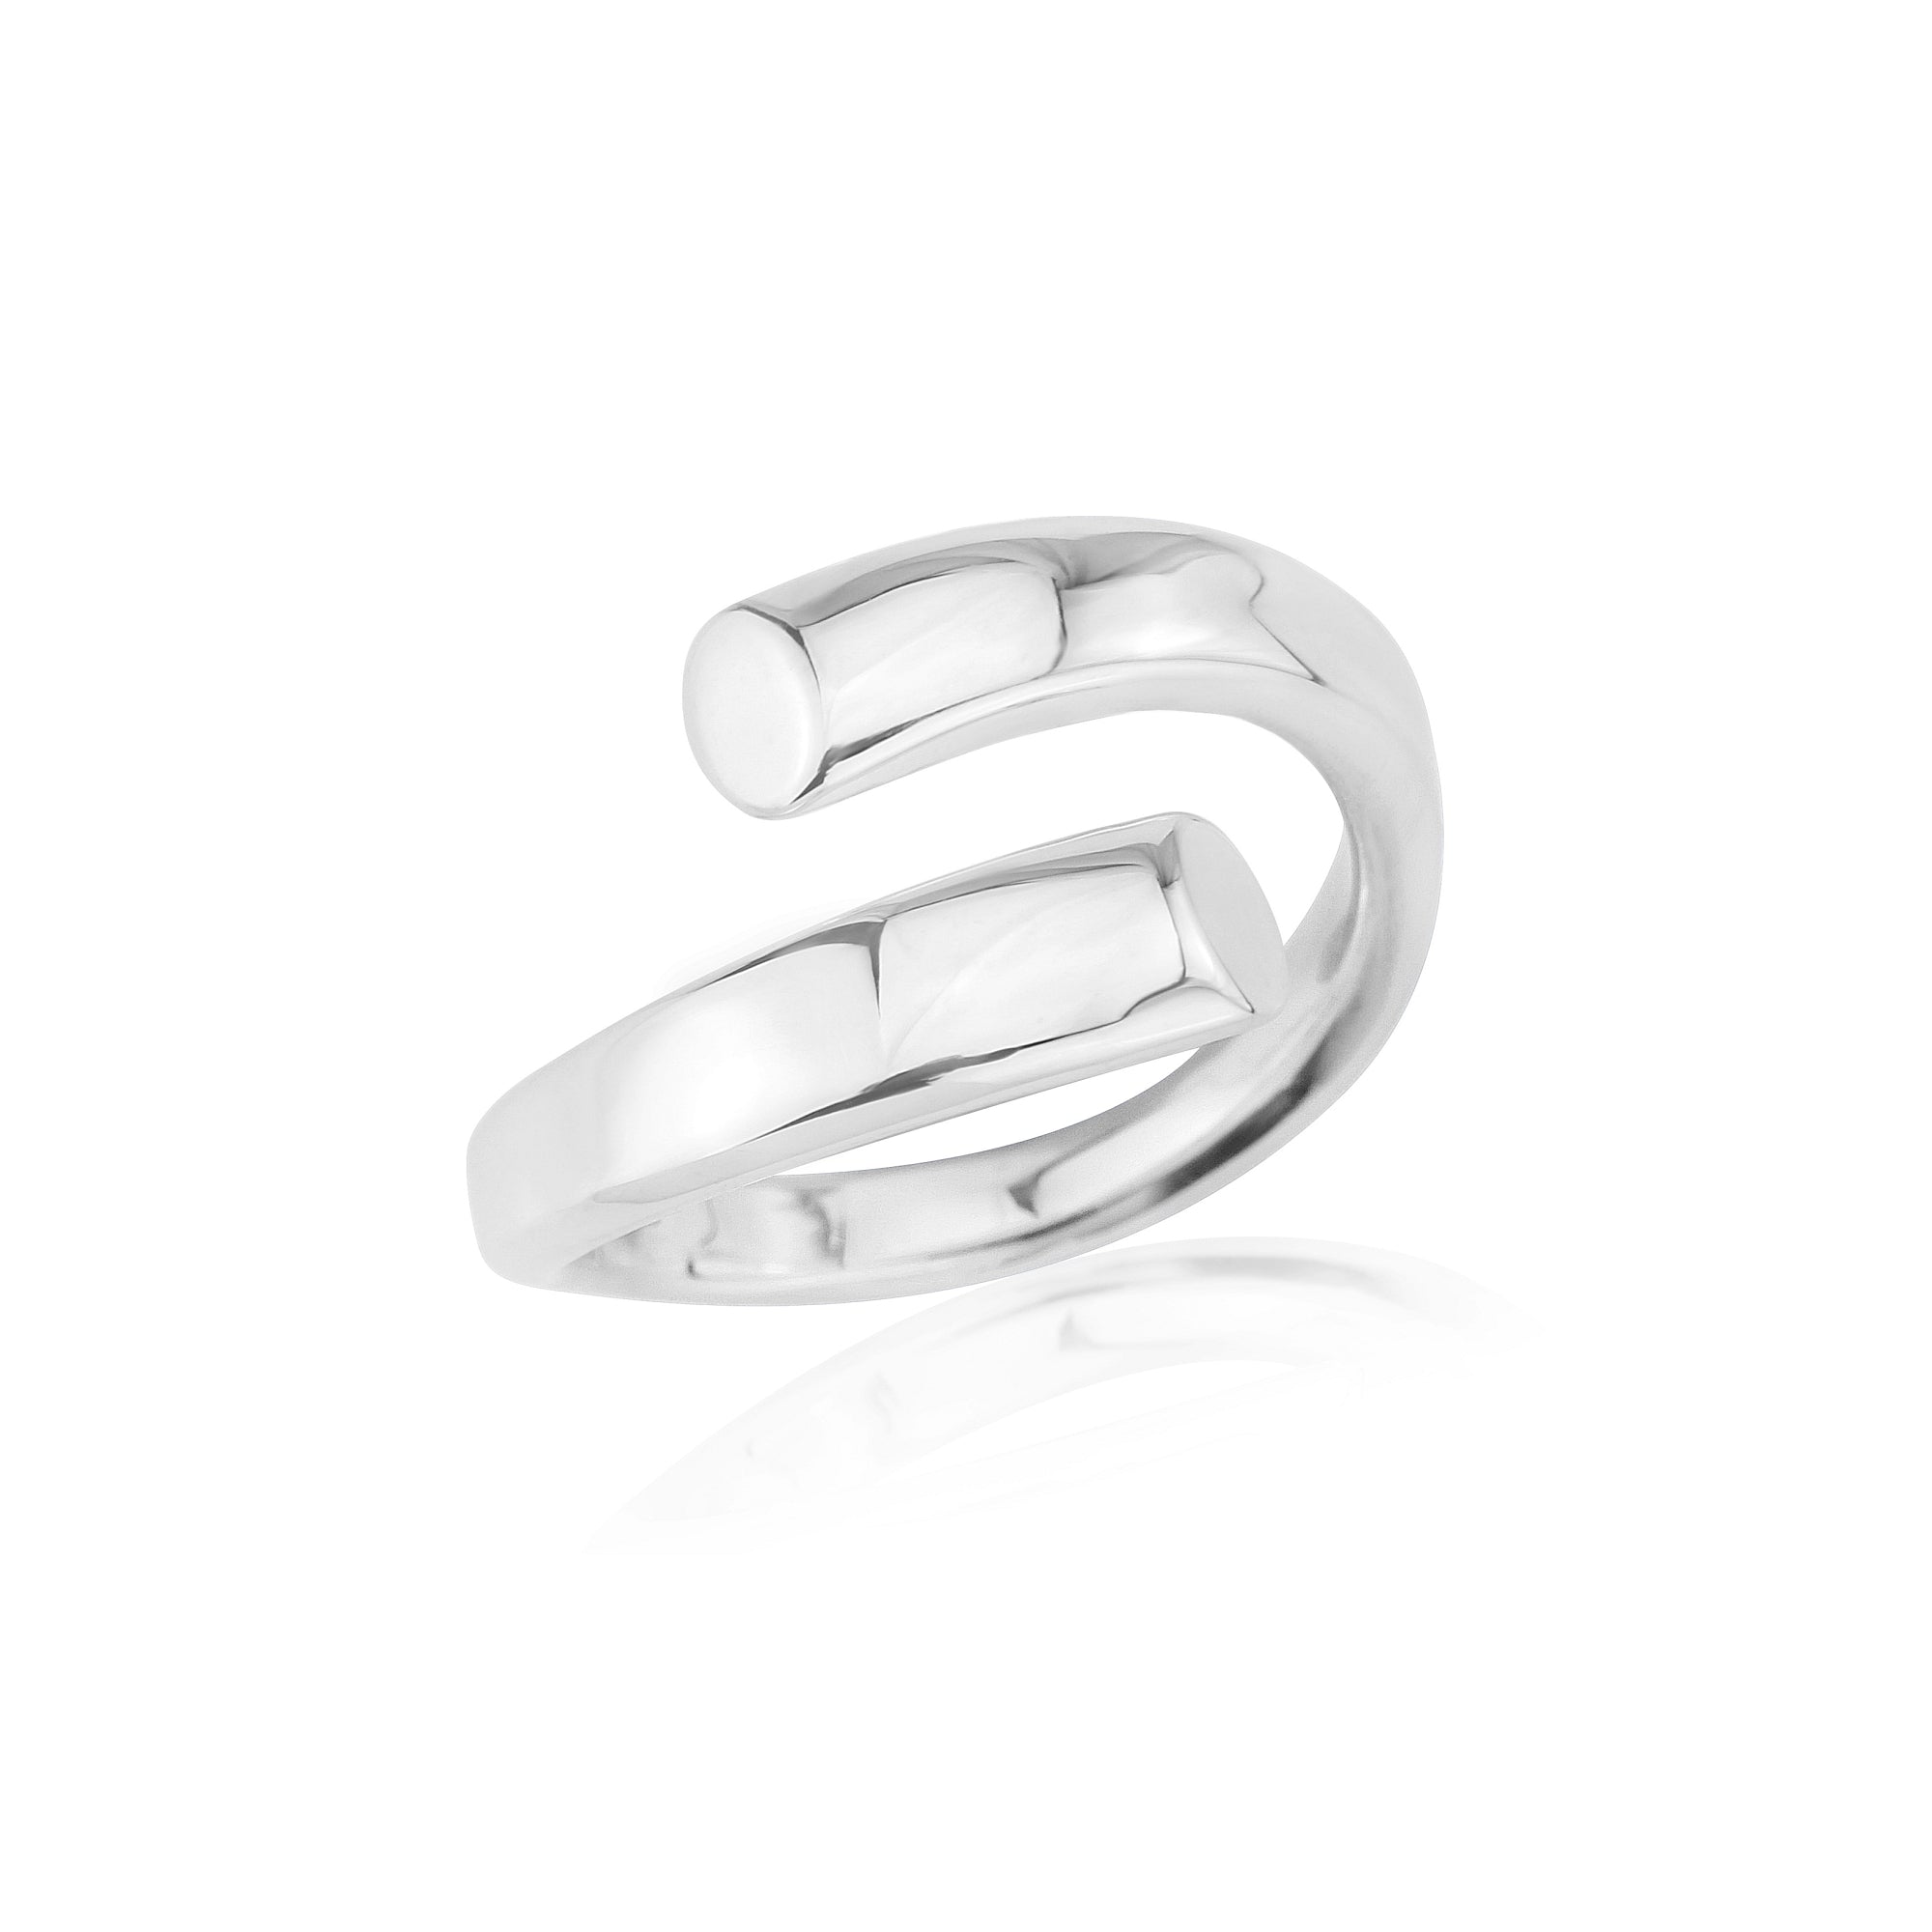 Handmade Silver Crossover design ring